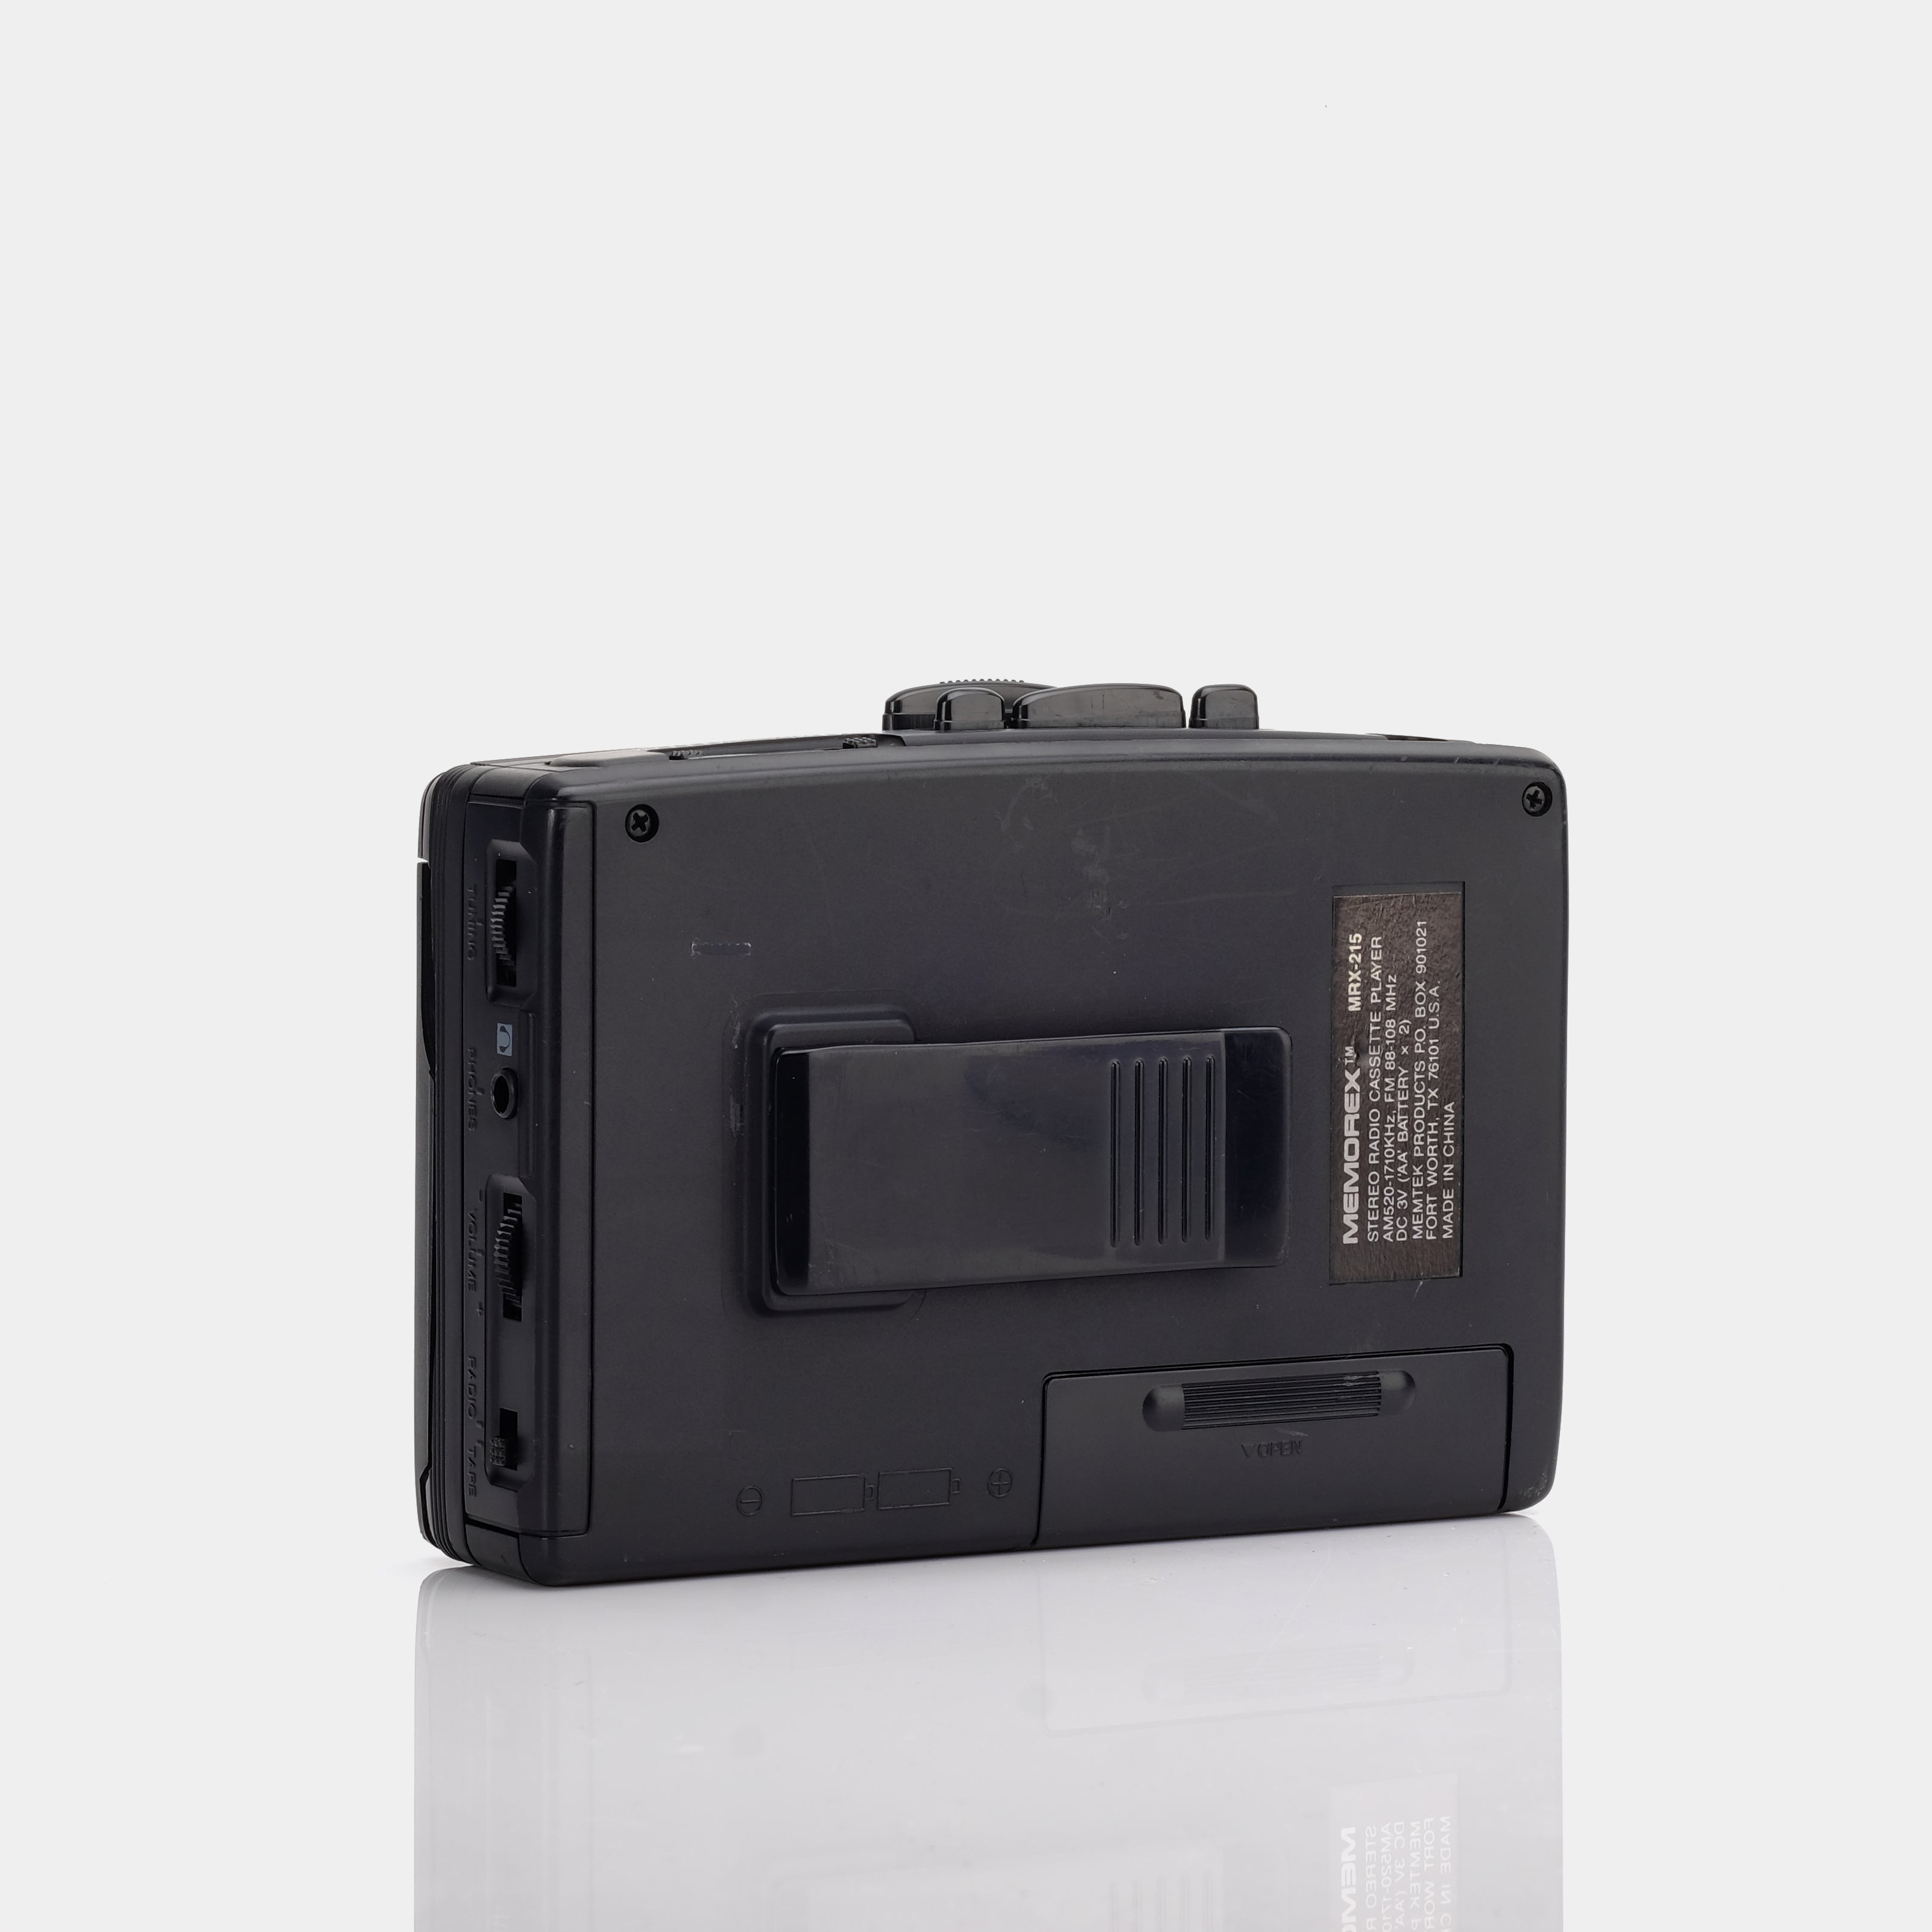 Memorex MRX-215 AM/FM Portable Cassette Player